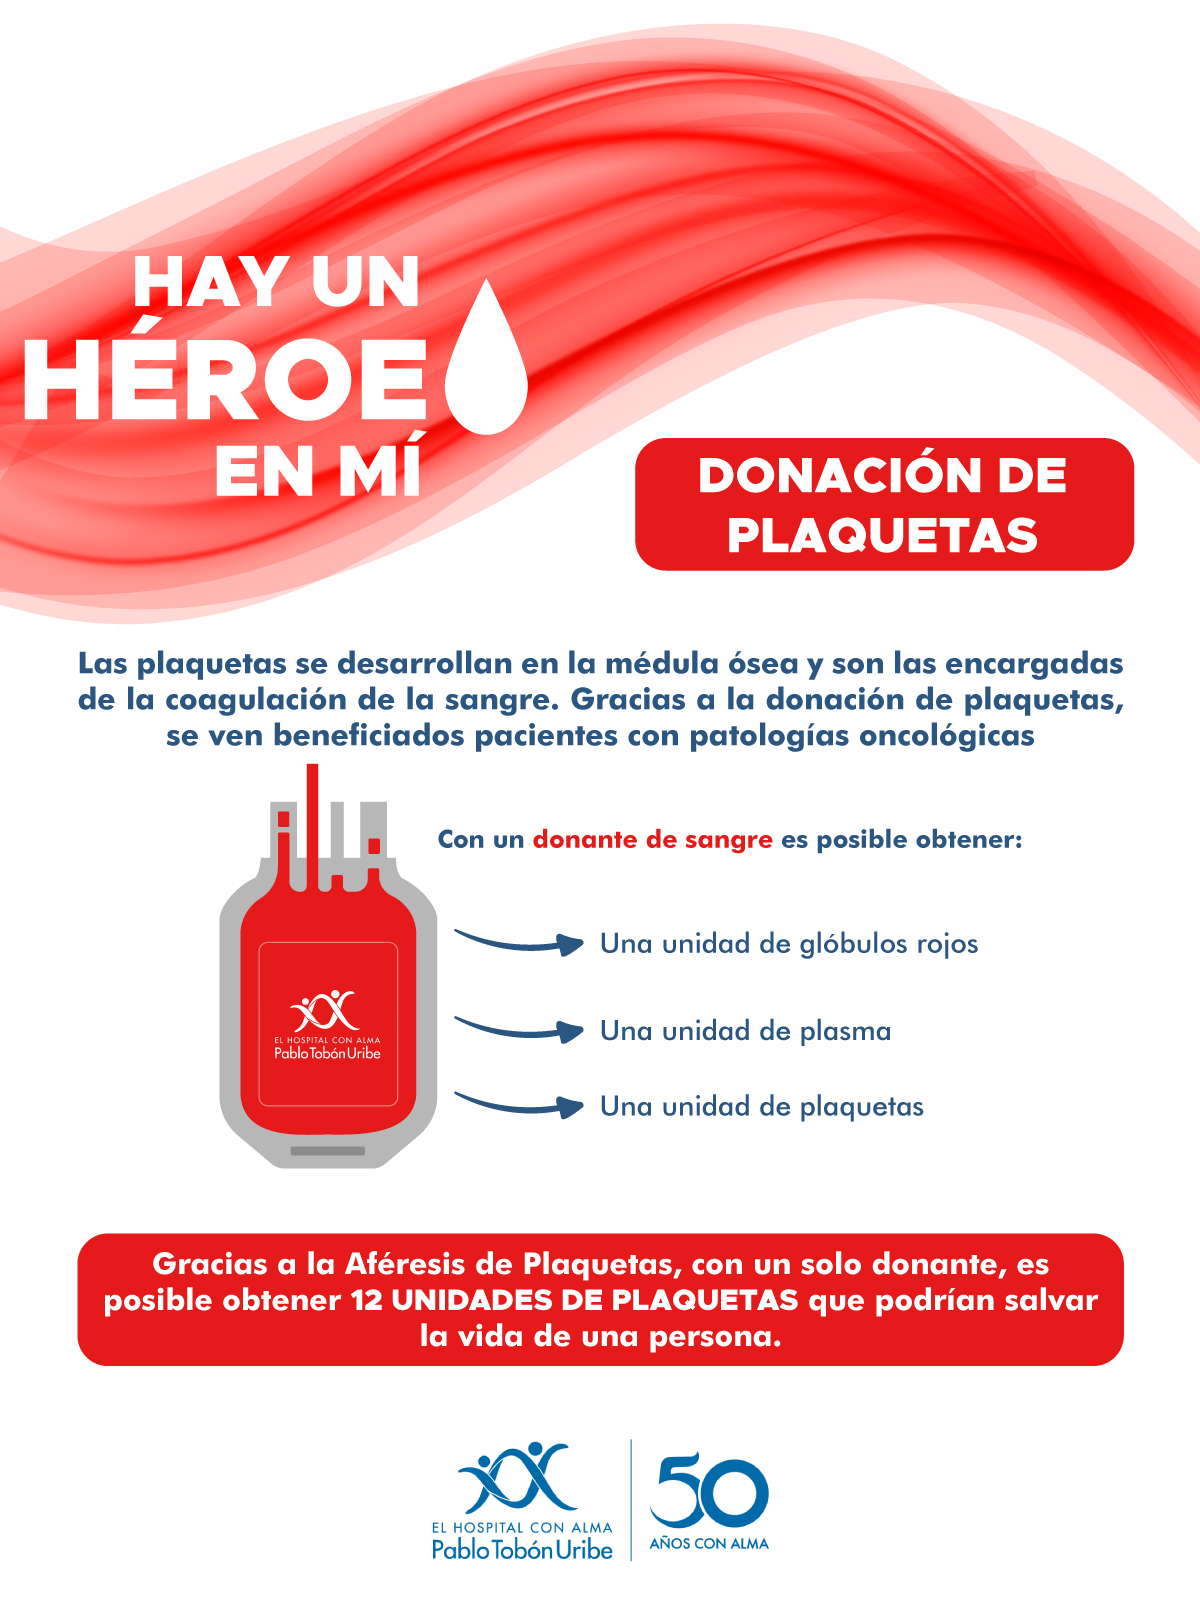 Hospital Pablo Tobón Uribe on Twitter: "La donación de plaquetas en nuestro  Hospital se realiza a través de un procedimiento llamado Aféresis de  Plaquetas. https://t.co/CMvfA8xLQw" / Twitter